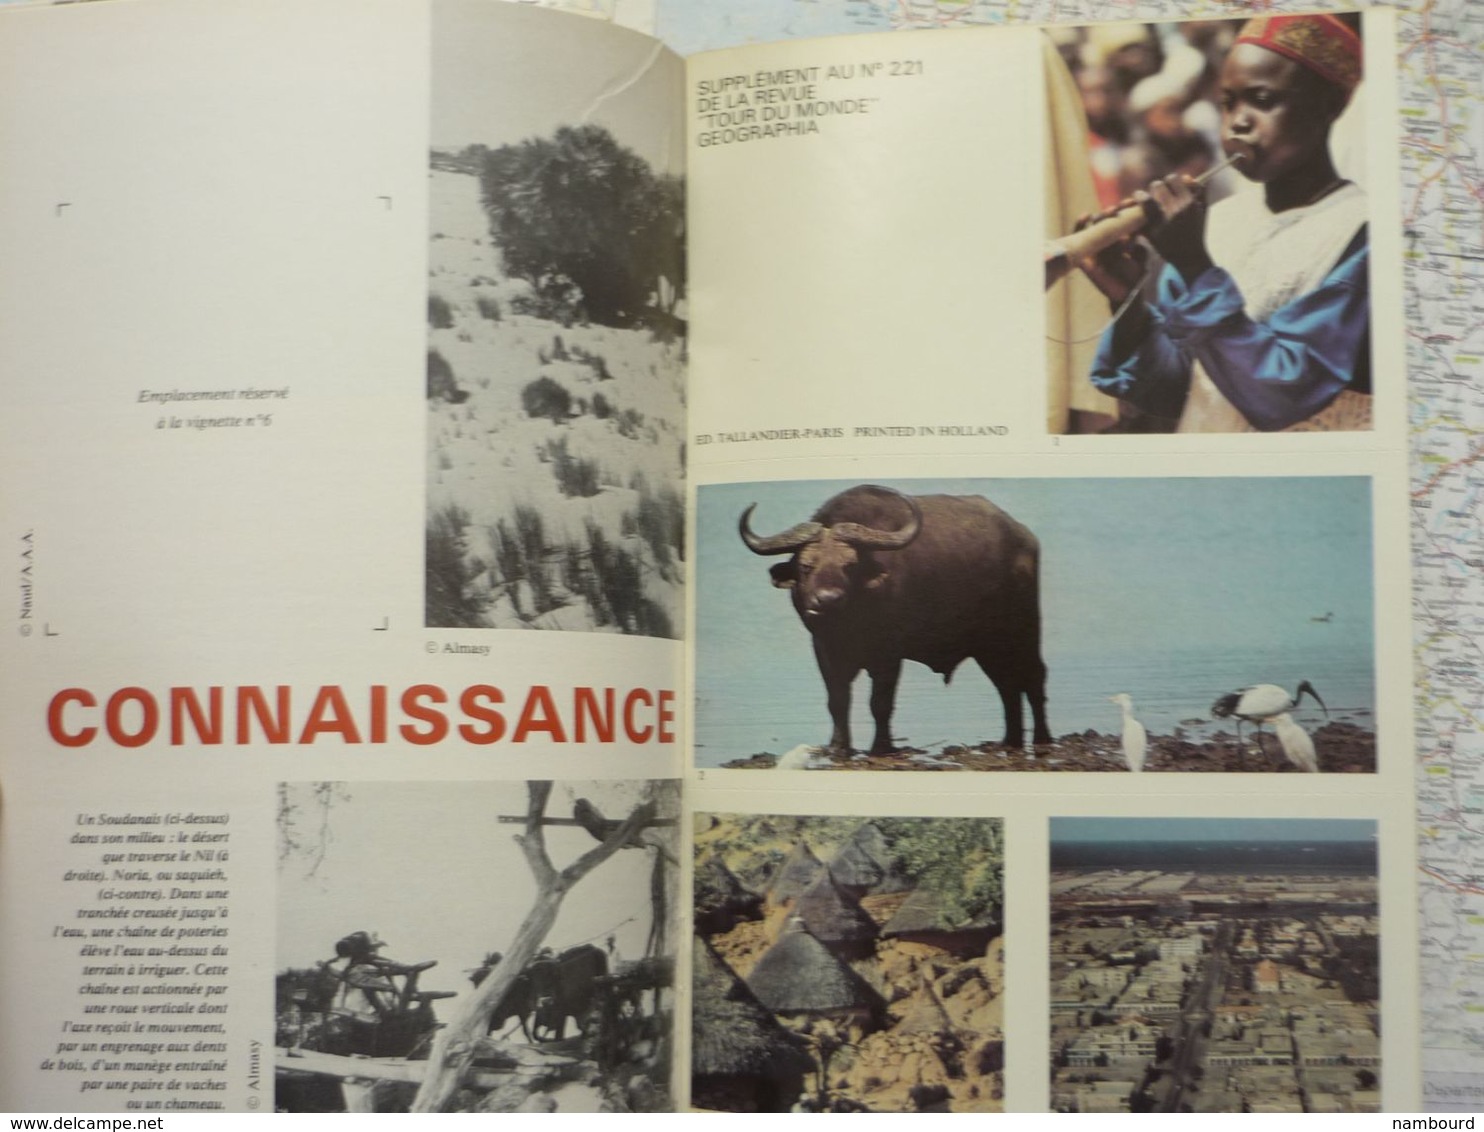 Tour du Monde N°221 République Démocratique du Soudan - Traditions au Laos - Peuples du Pacifique Février 1978